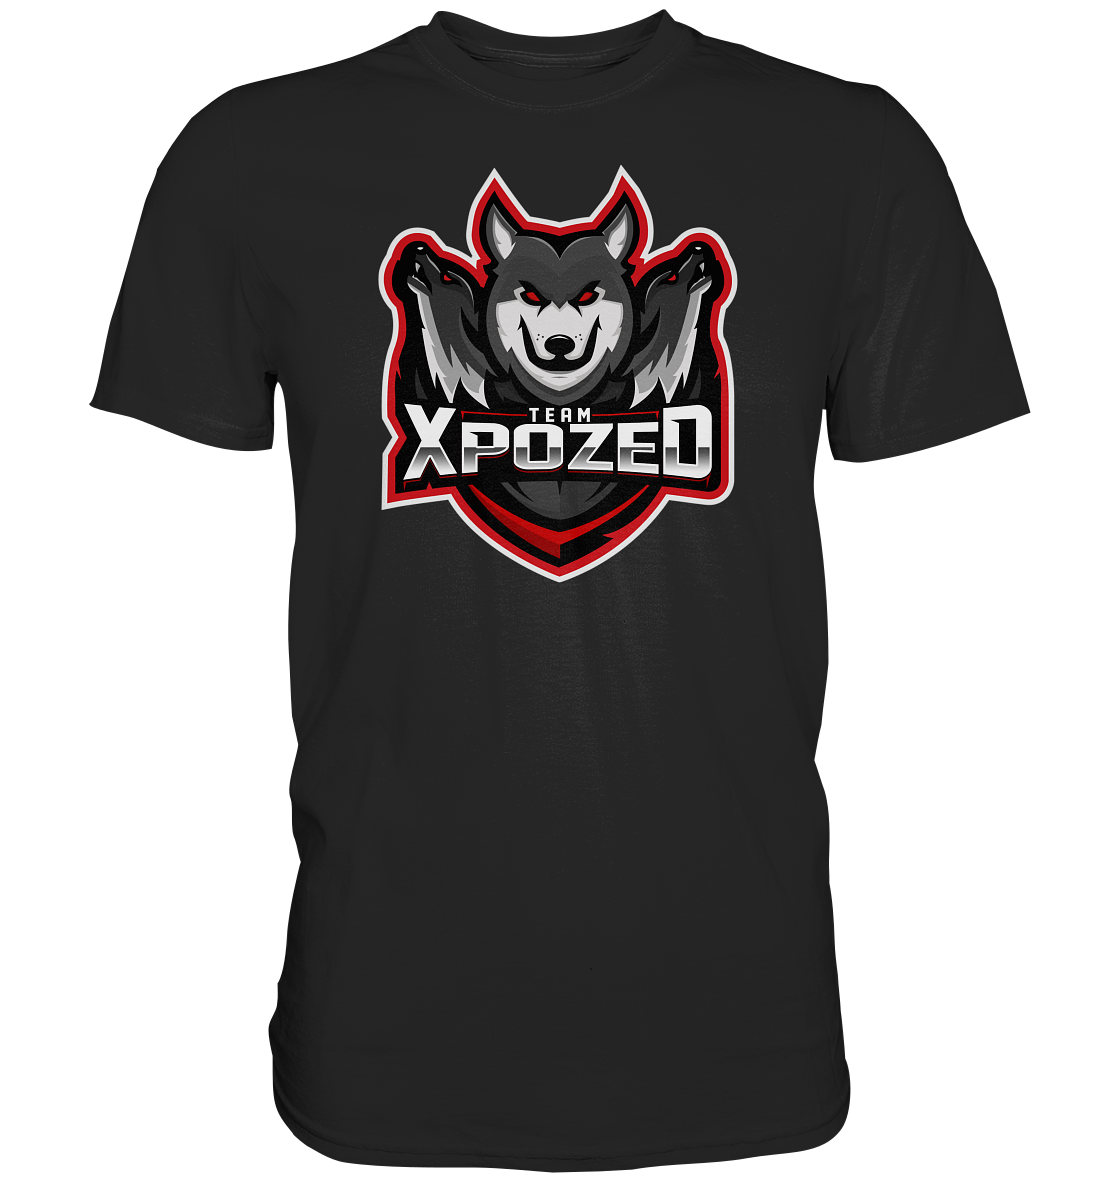 TEAM XPOZED - Basic Shirt